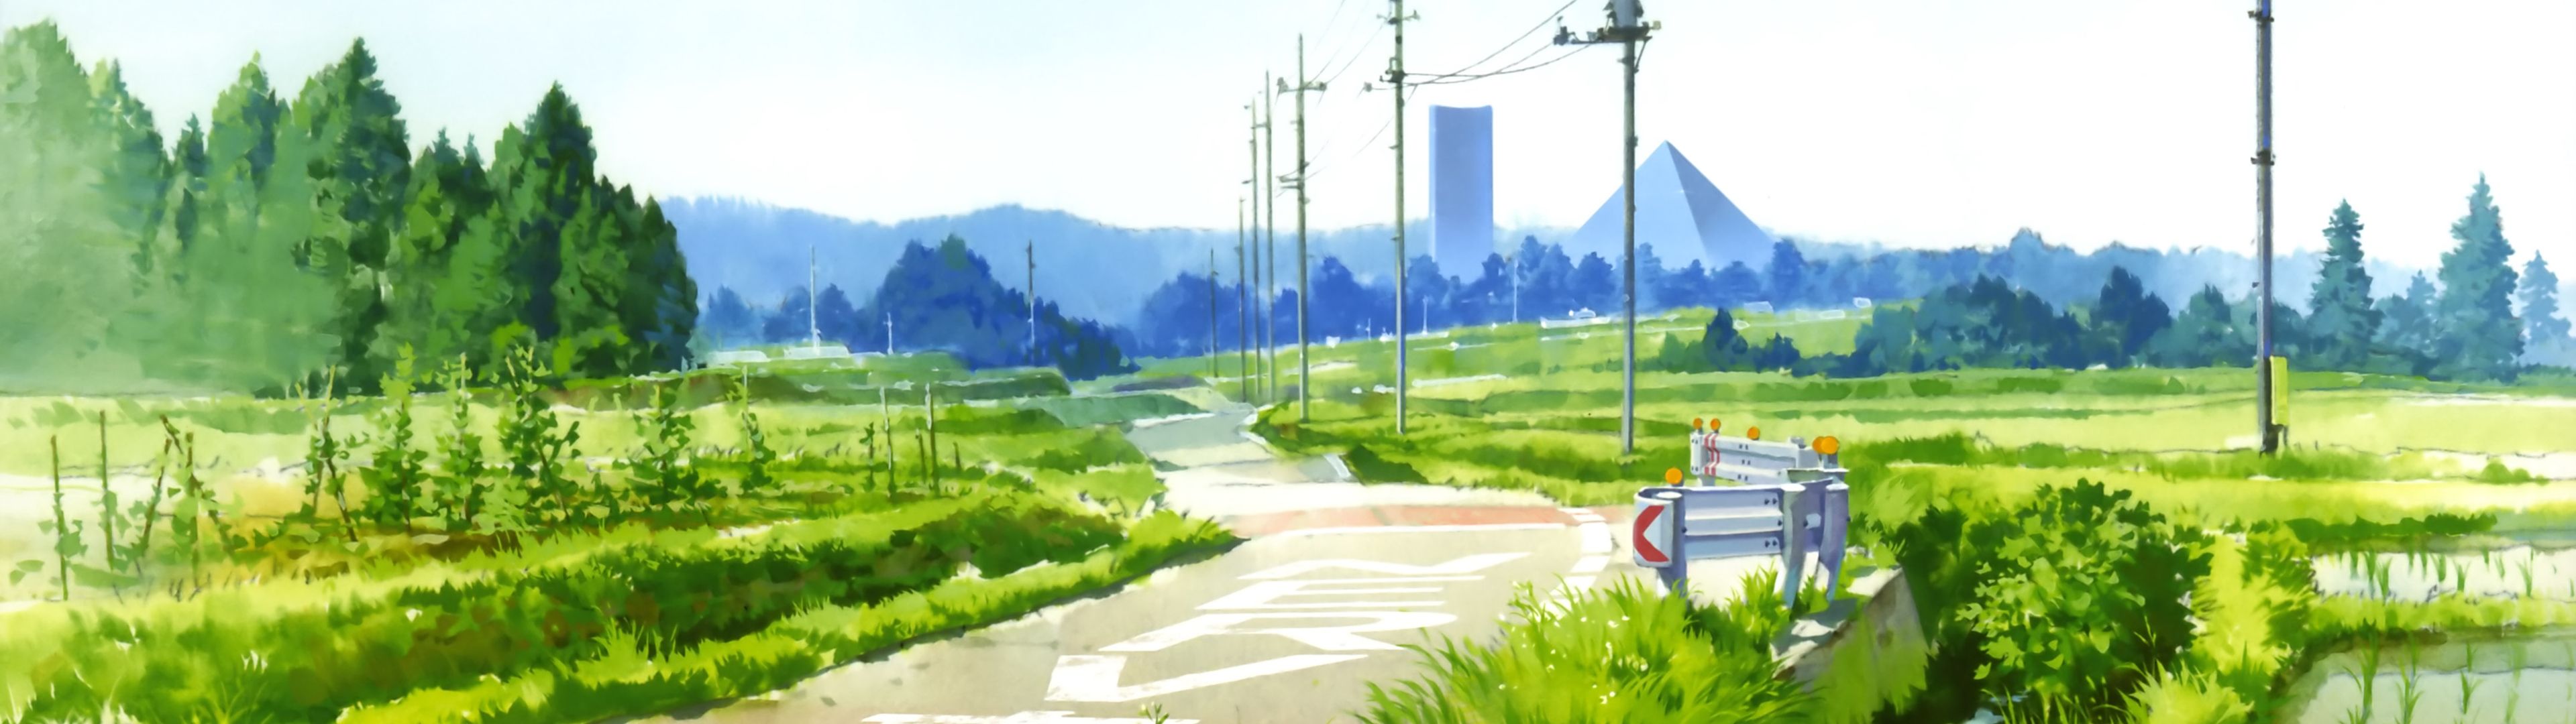 Studio Ghibli Dual Monitor Wallpapers